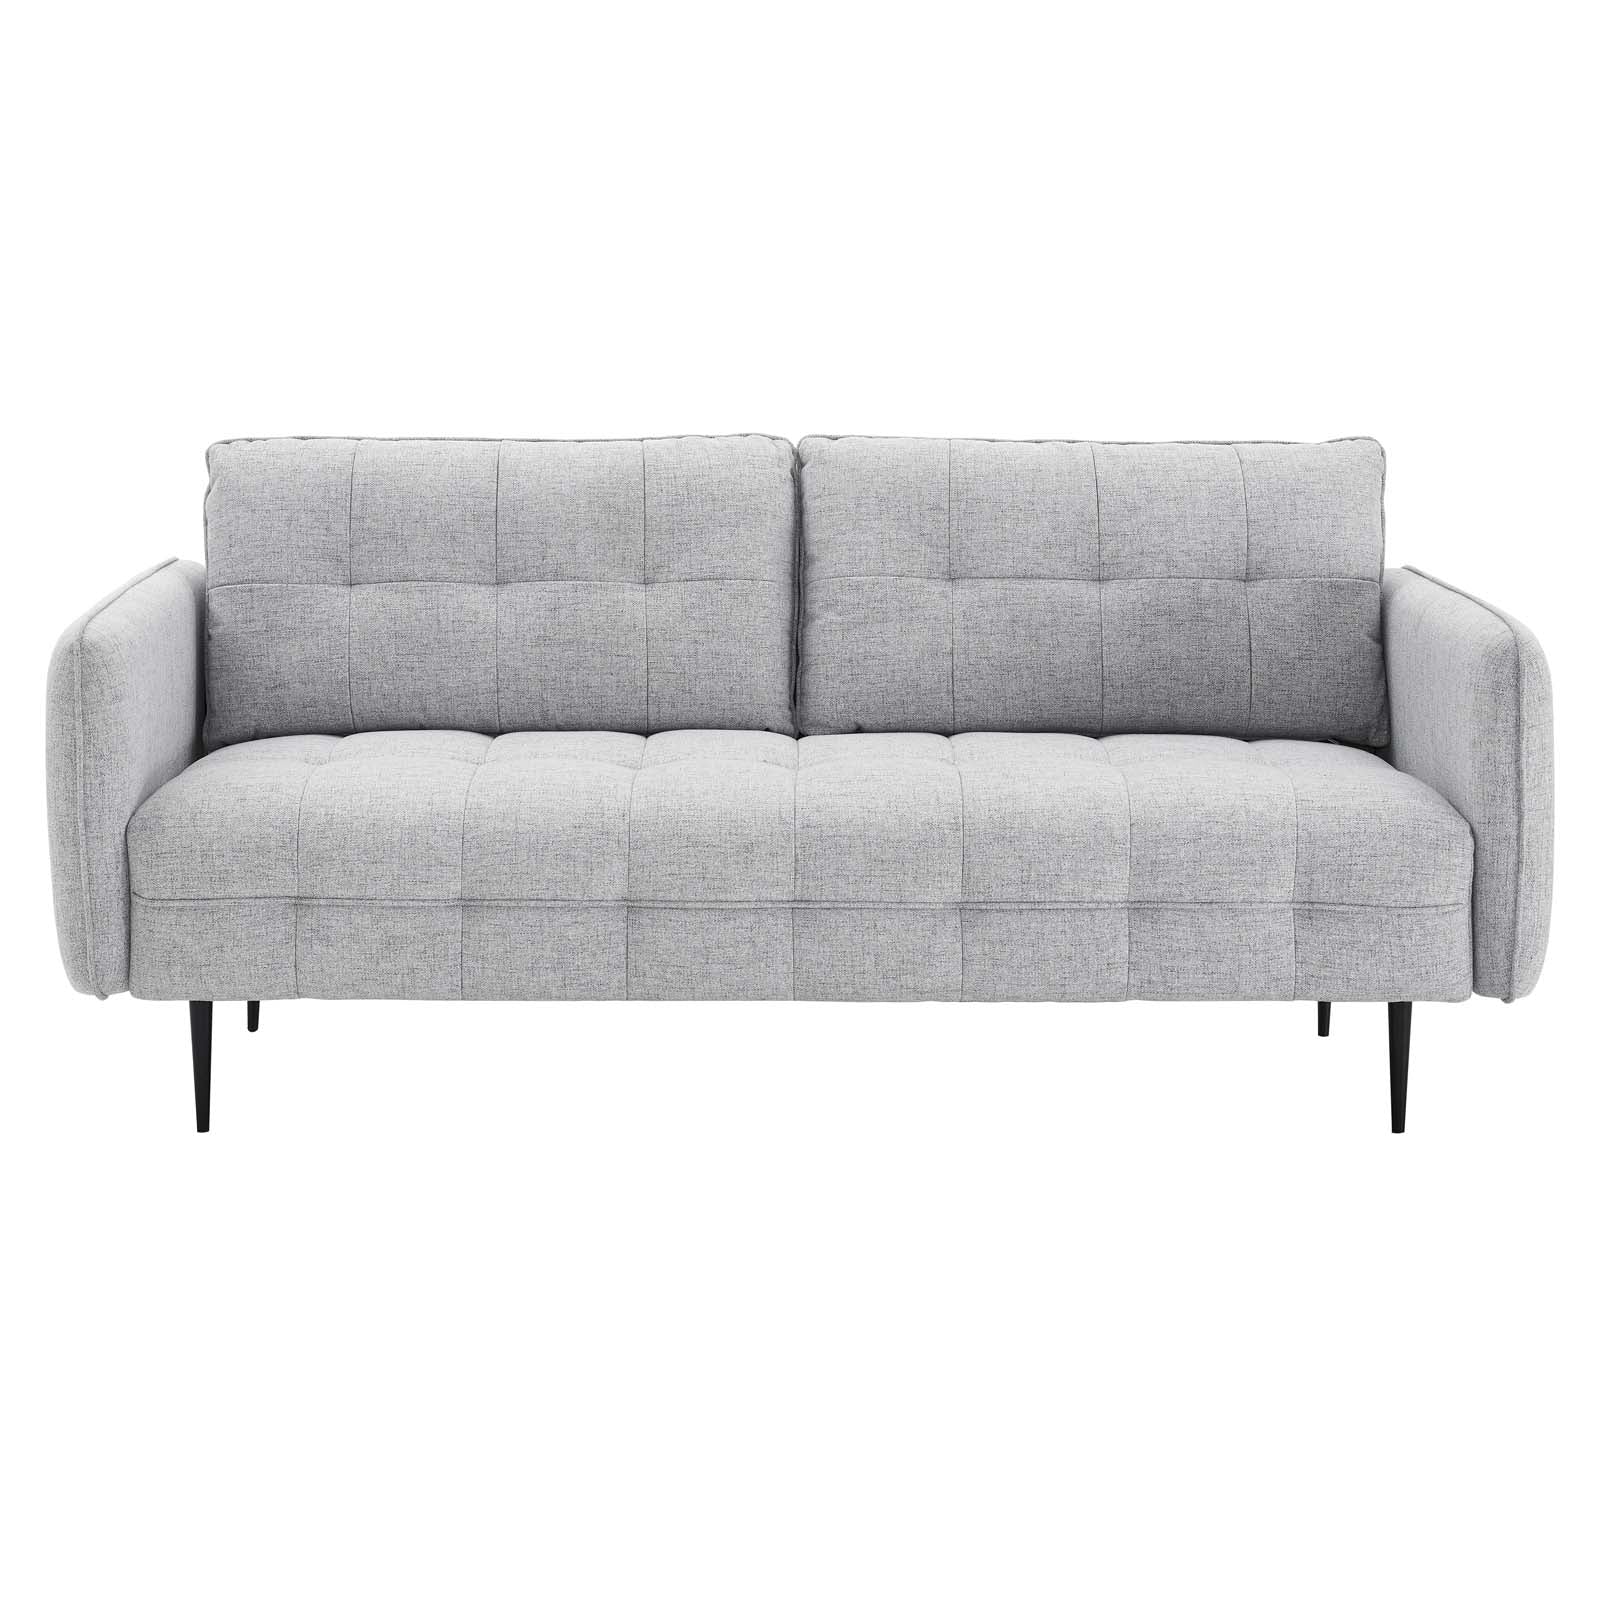 Cameron Tufted Fabric Sofa